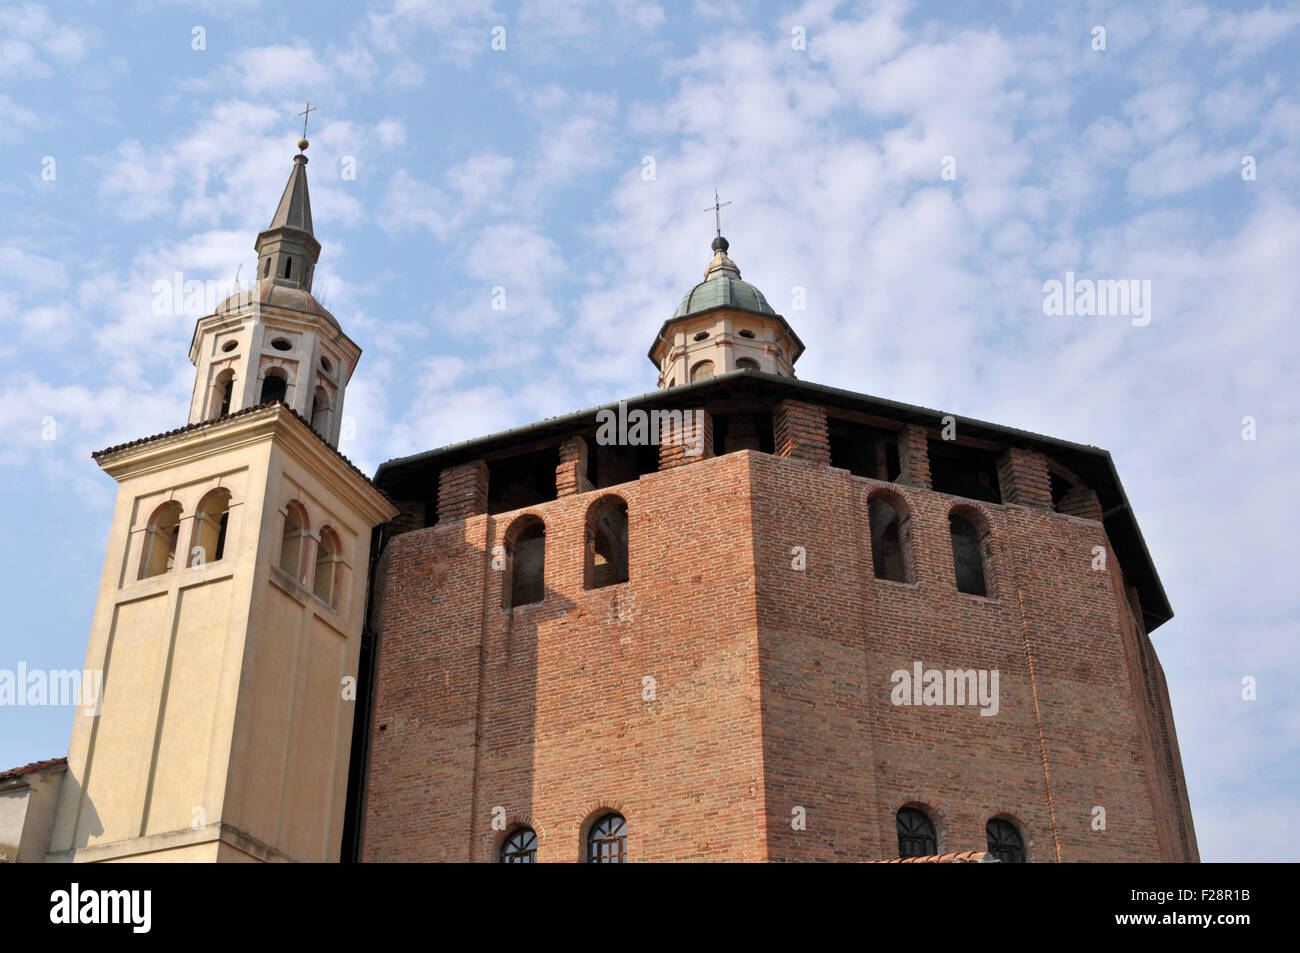 Beata Vergine Incoronata church, Sabbioneta, Mantua province, Lombardy region, Italy Stock Photo